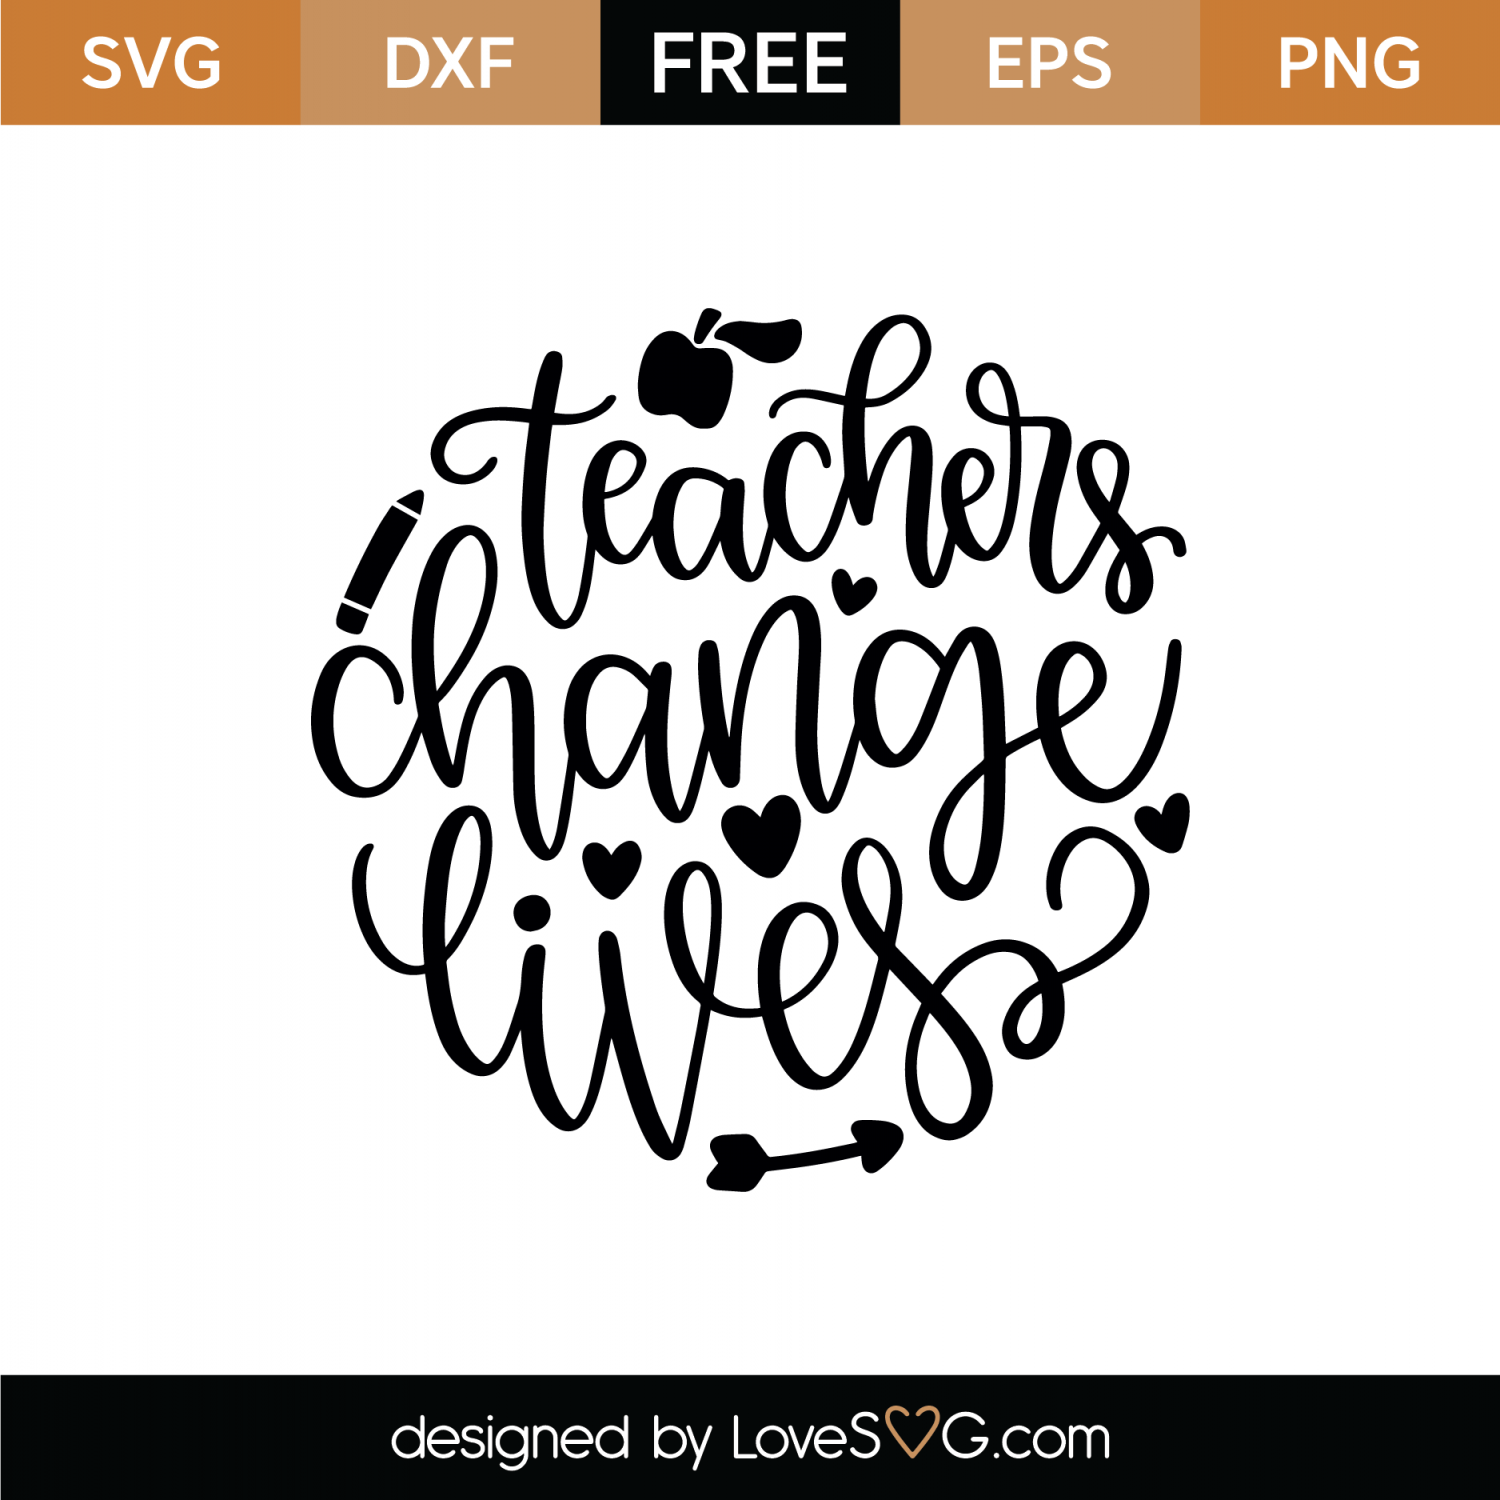 Download Free Teachers Change Lives SVG Cut File | Lovesvg.com